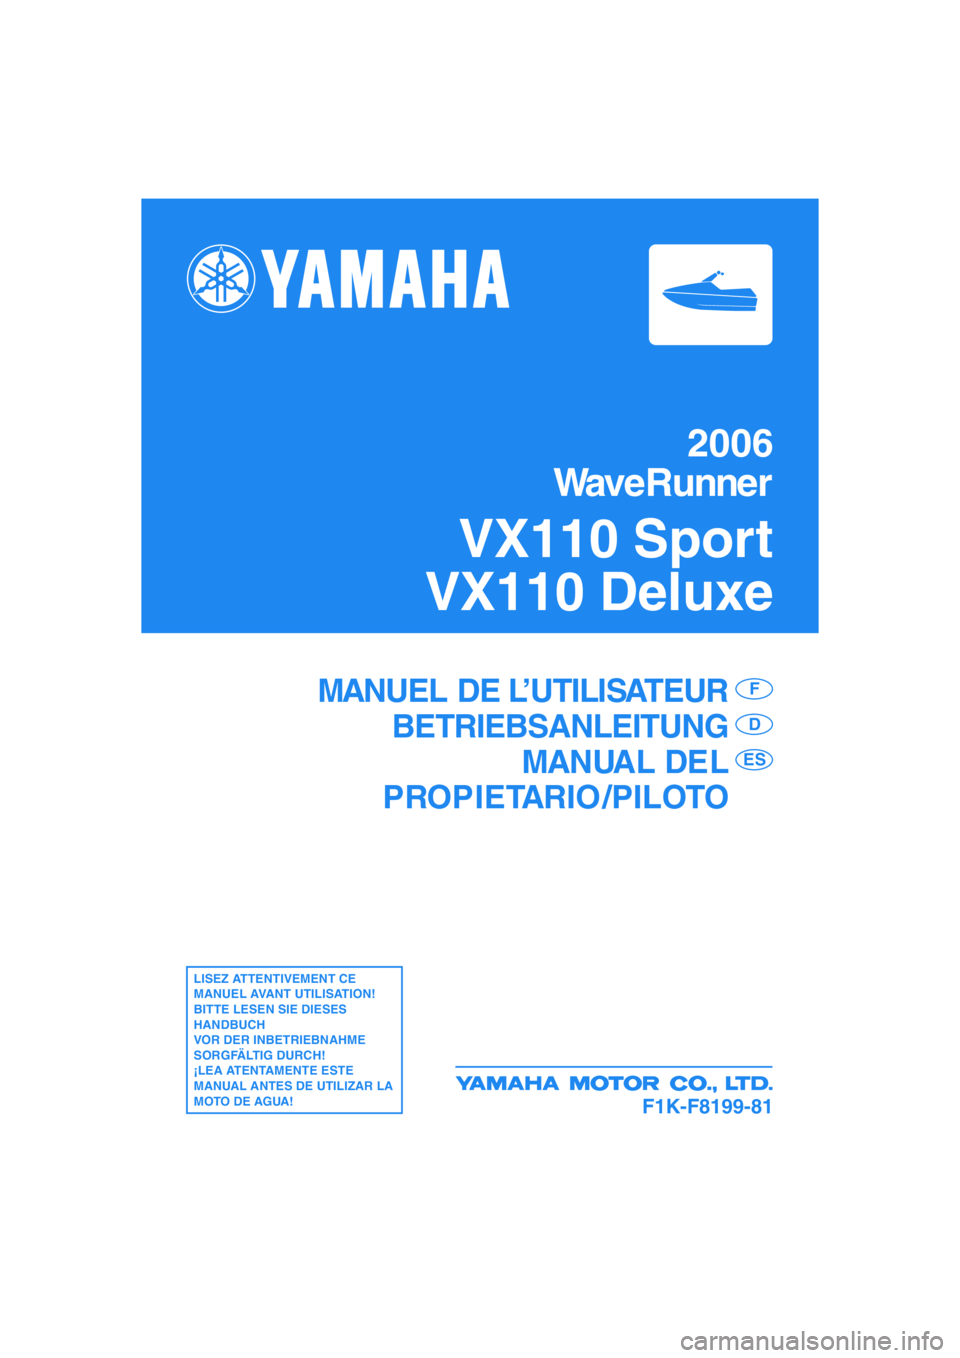 YAMAHA VX 2006  Manuale de Empleo (in Spanish) F1K-F8199-81
MANUEL DE L’UTILISATEUR
BETRIEBSANLEITUNG
MANUAL DEL
PROPIETARIO /PILOTOF
D
ES
LISEZ ATTENTIVEMENT CE 
MANUEL AVANT UTILISATION!
BITTE LESEN SIE DIESES 
HANDBUCH 
VOR DER INBETRIEBNAHME